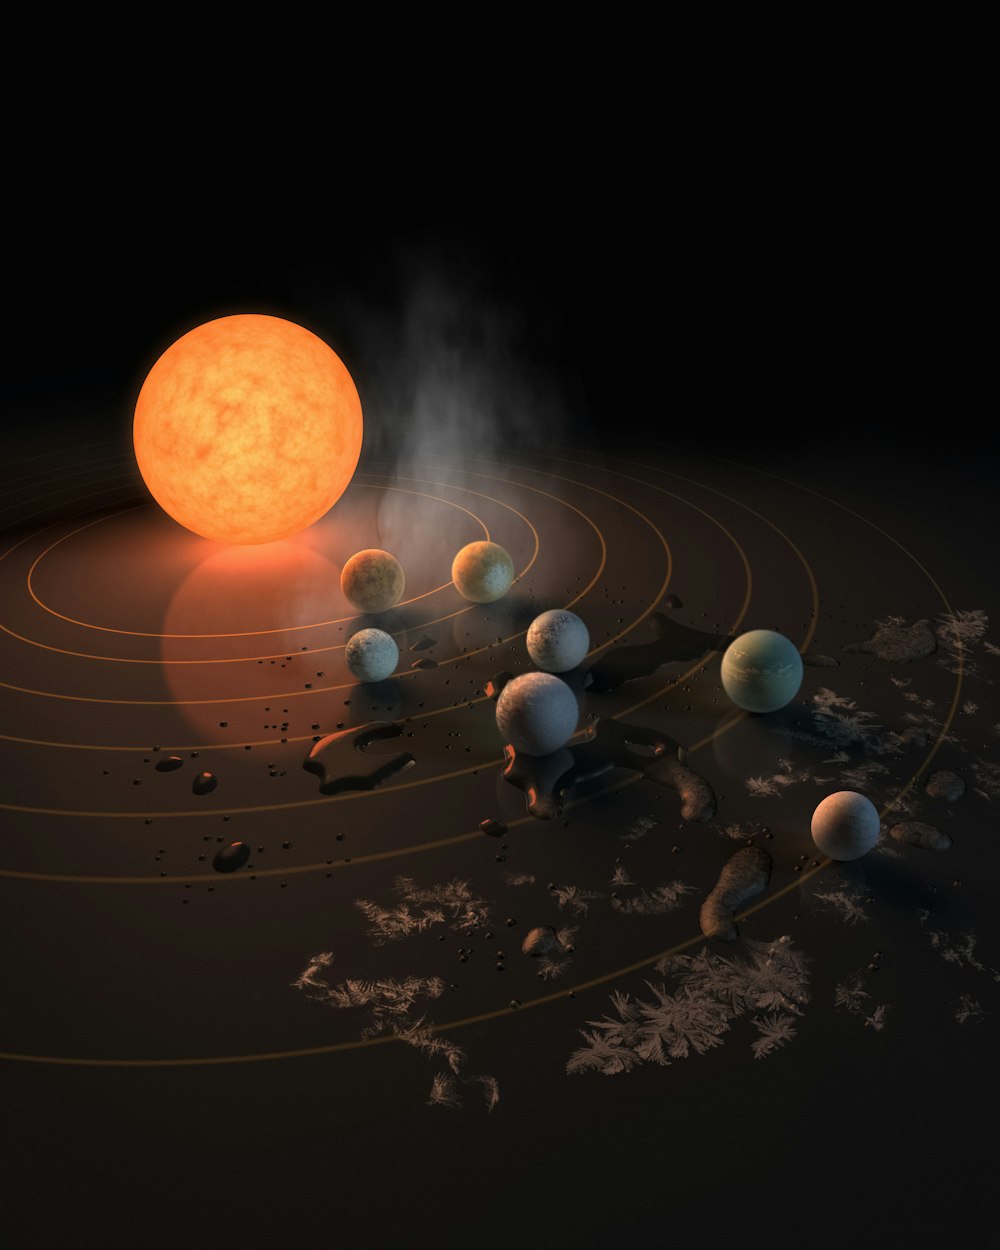 Représentation artistique d’un système solaire avec huit planètes